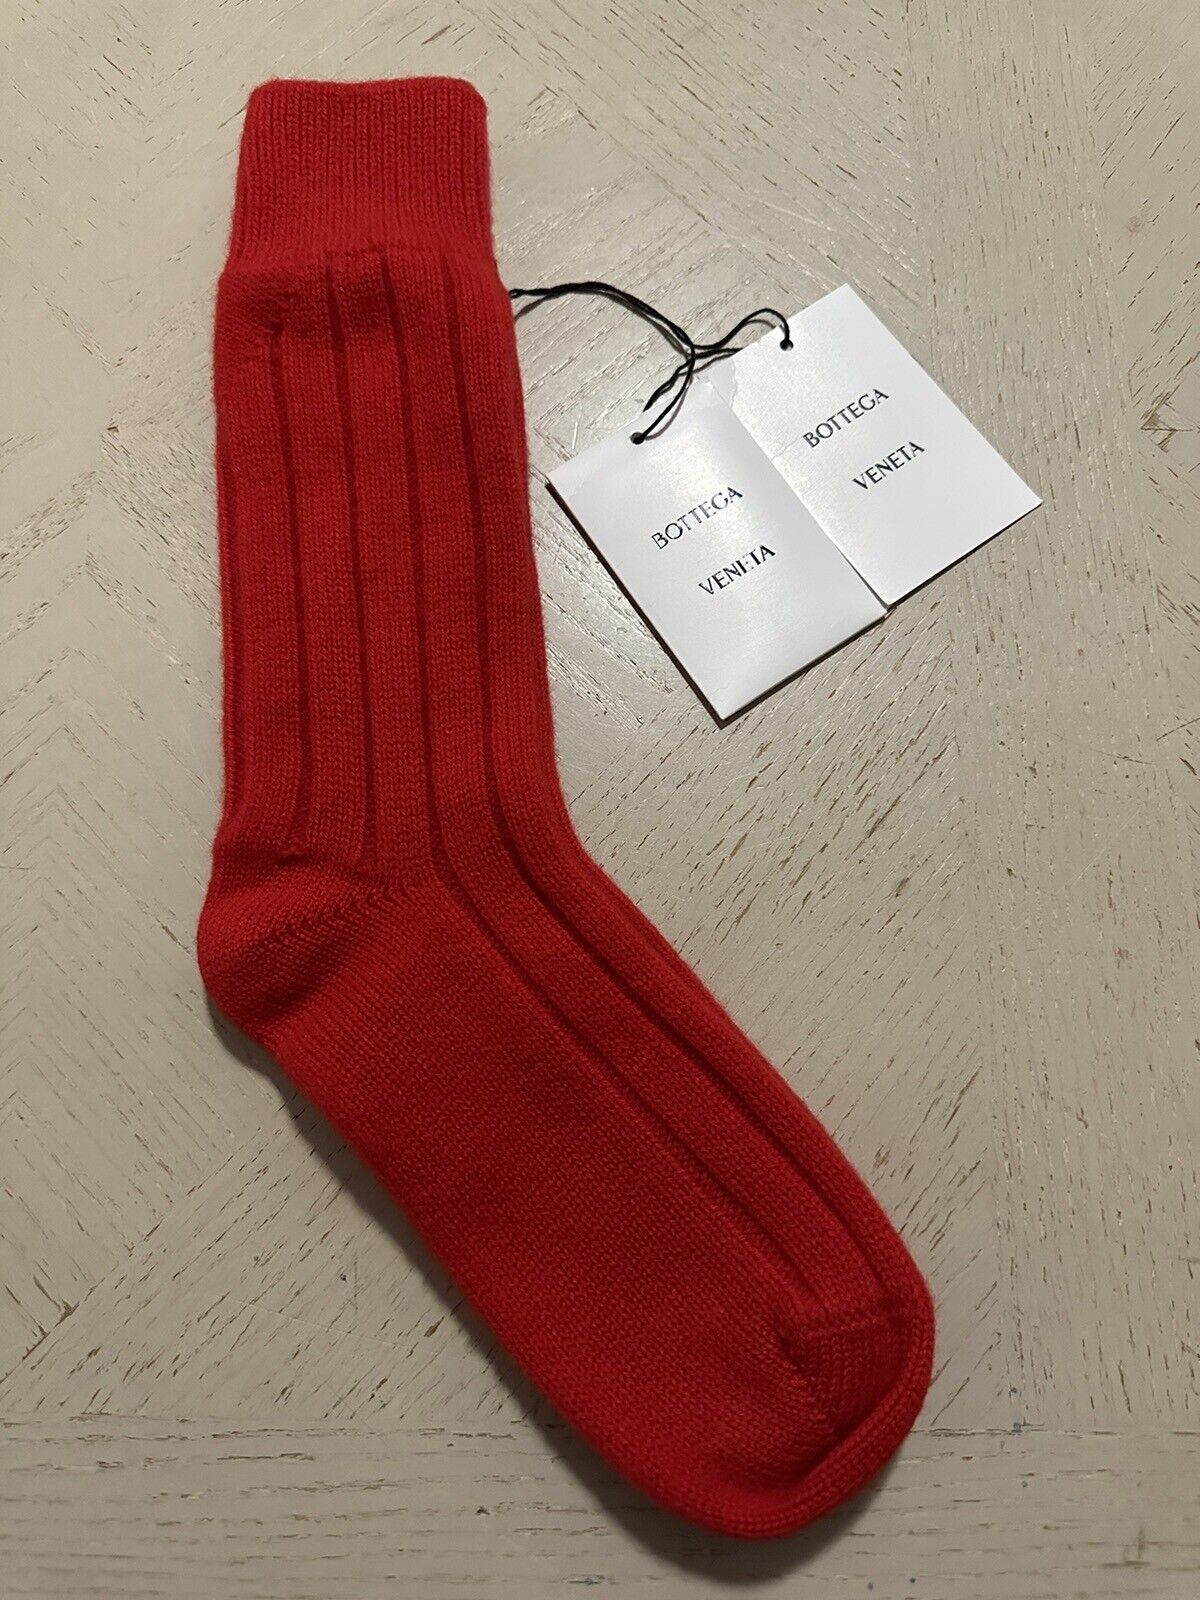 СЗТ $390 Bottega Veneta Кашемировые носки в рубчик Цвет Красный Размер S Италия